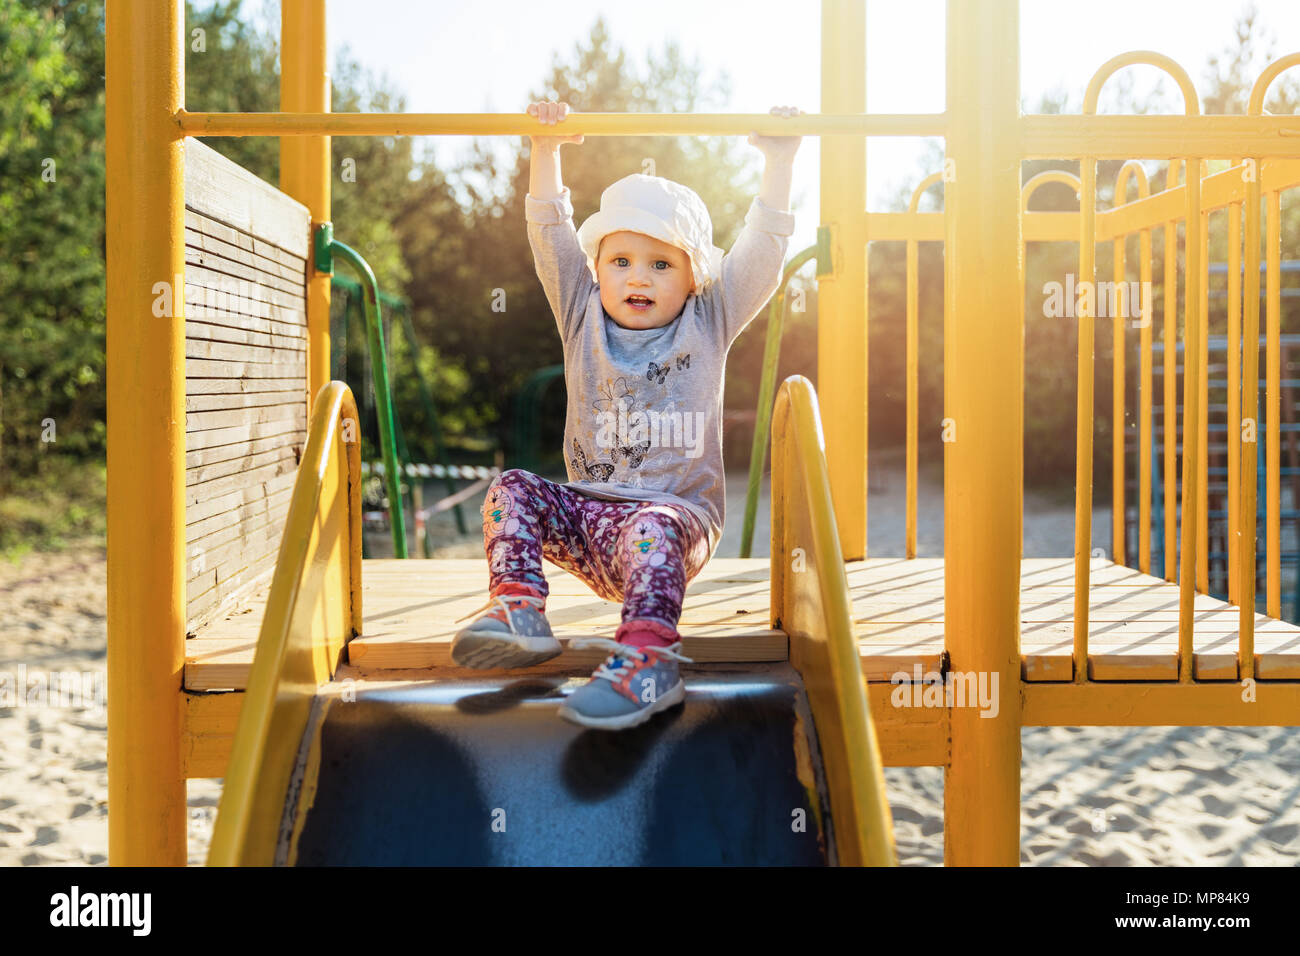 child on slider at playground Stock Photo